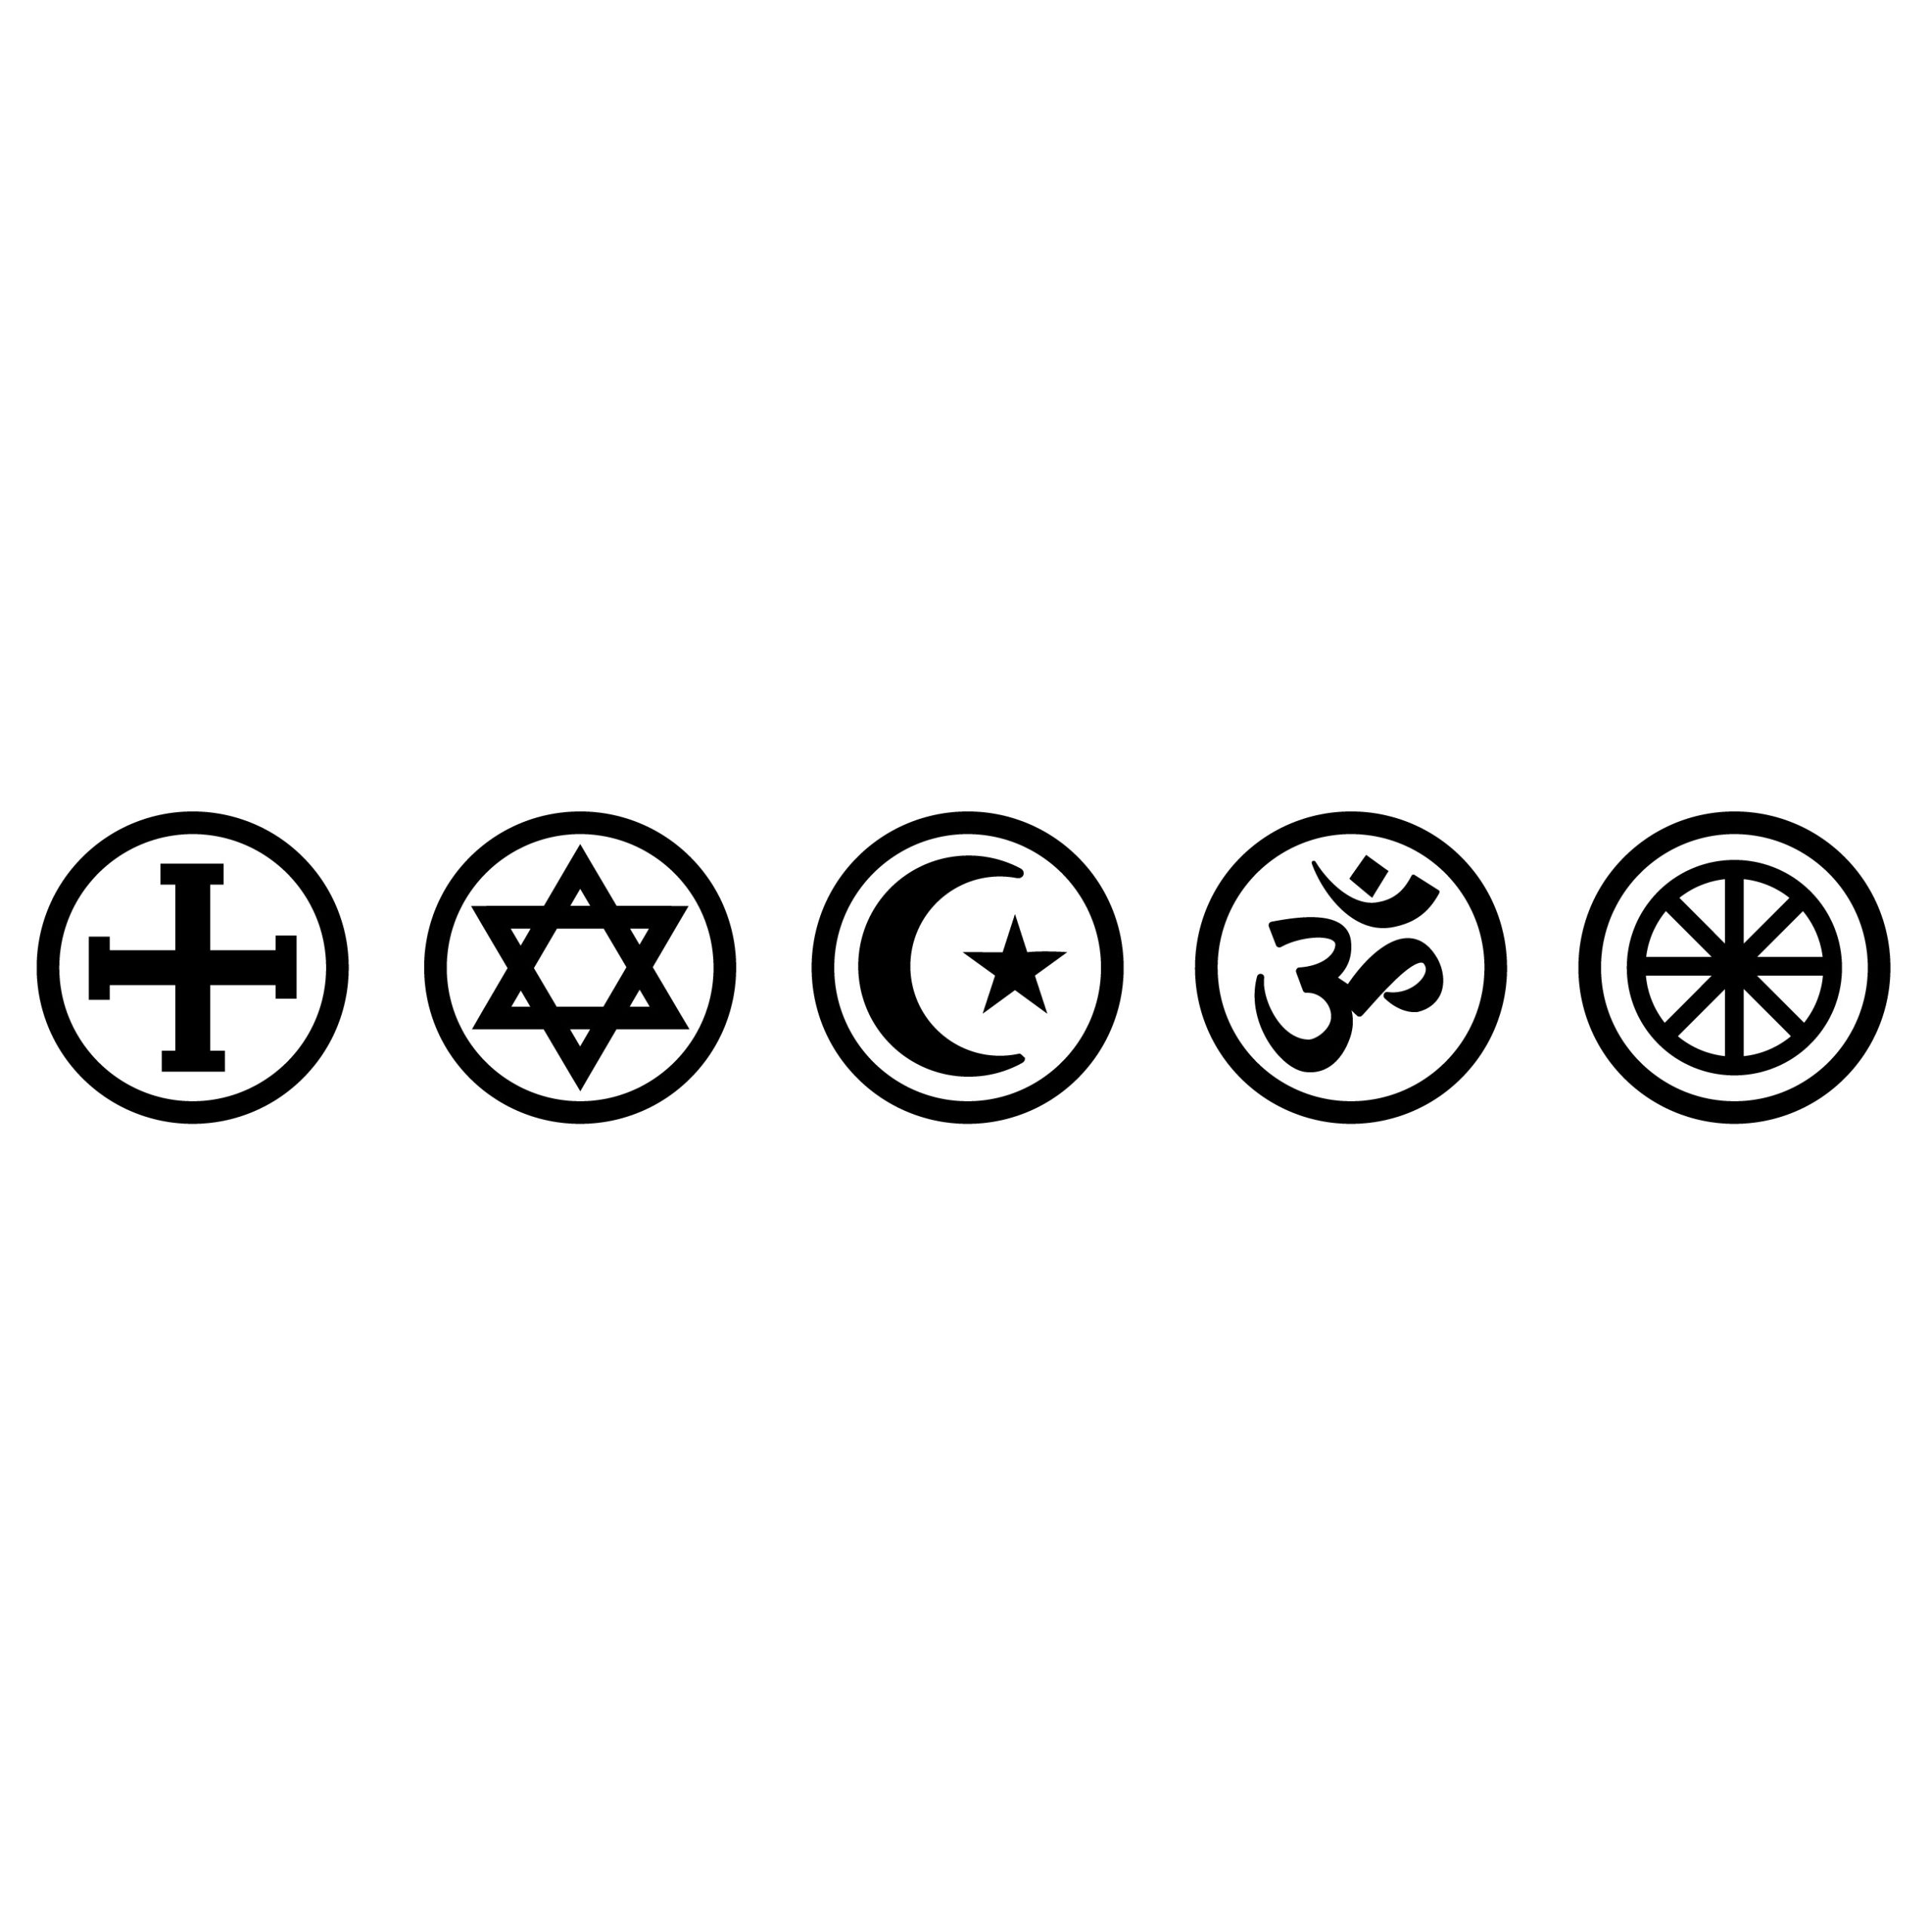 Religionssymbole quadrat